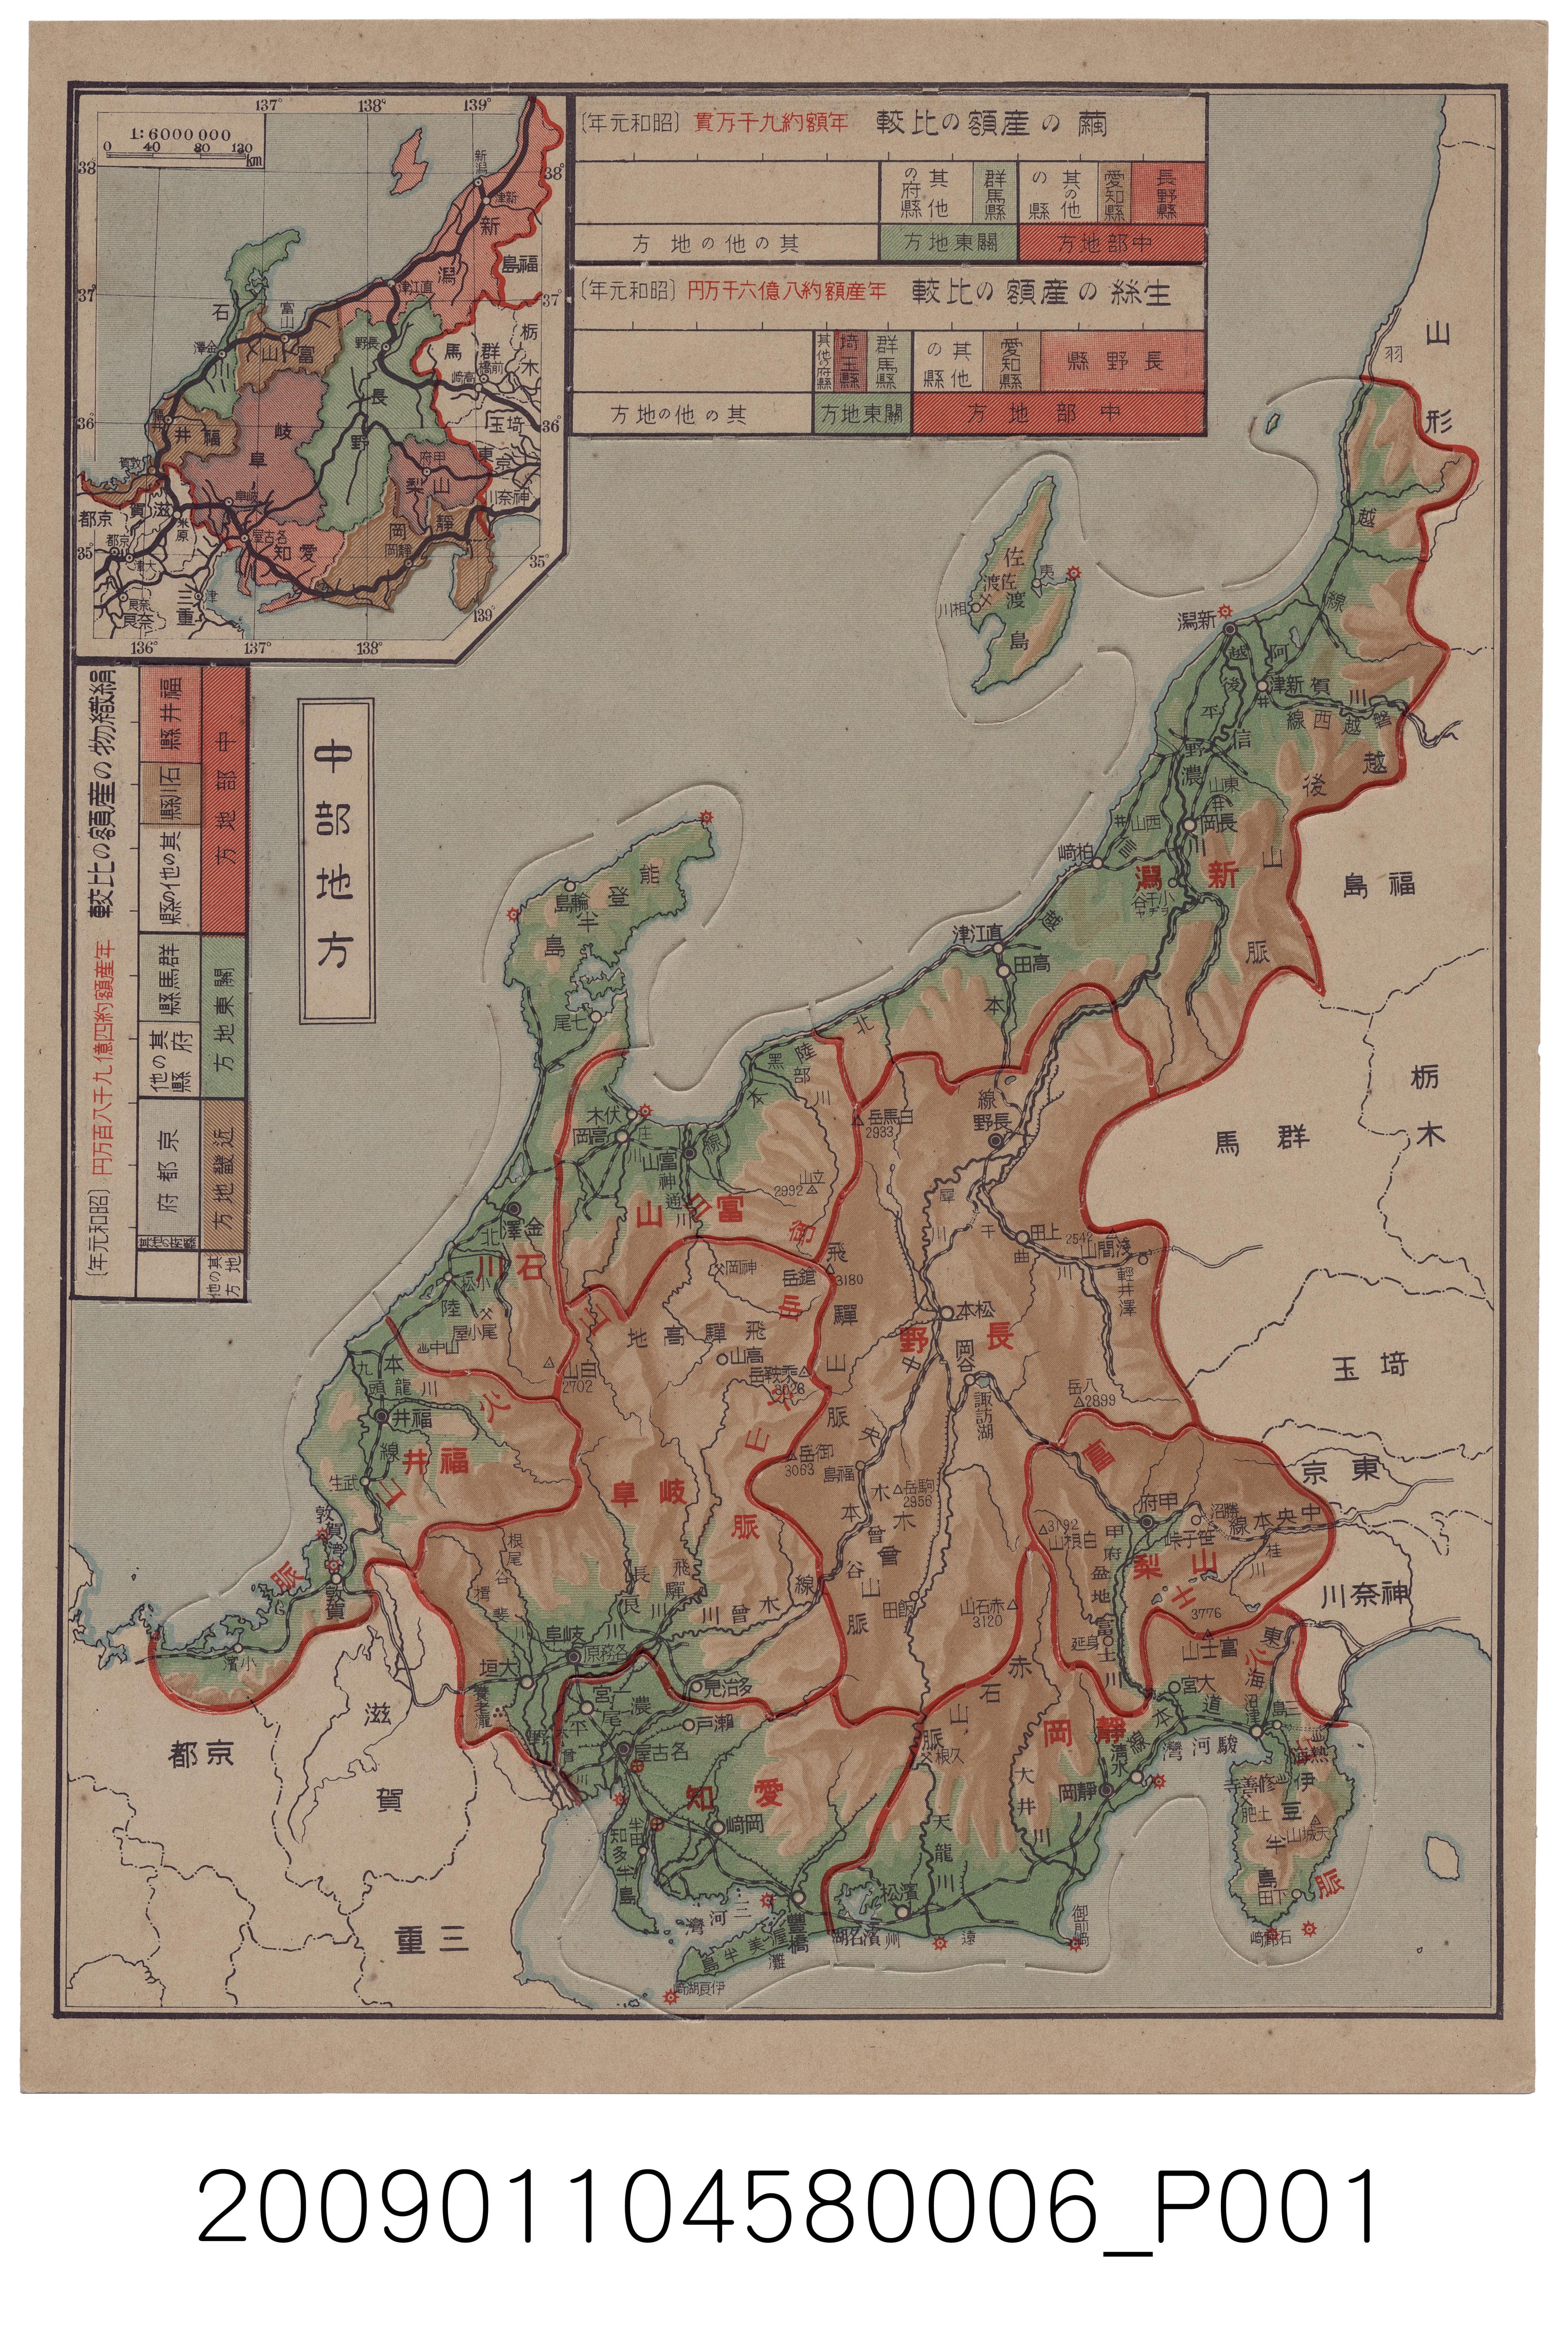 大日本雄辯會講談社發行《各府縣分解式大日本板地圖》第5幅〈中部地方〉 (共2張)